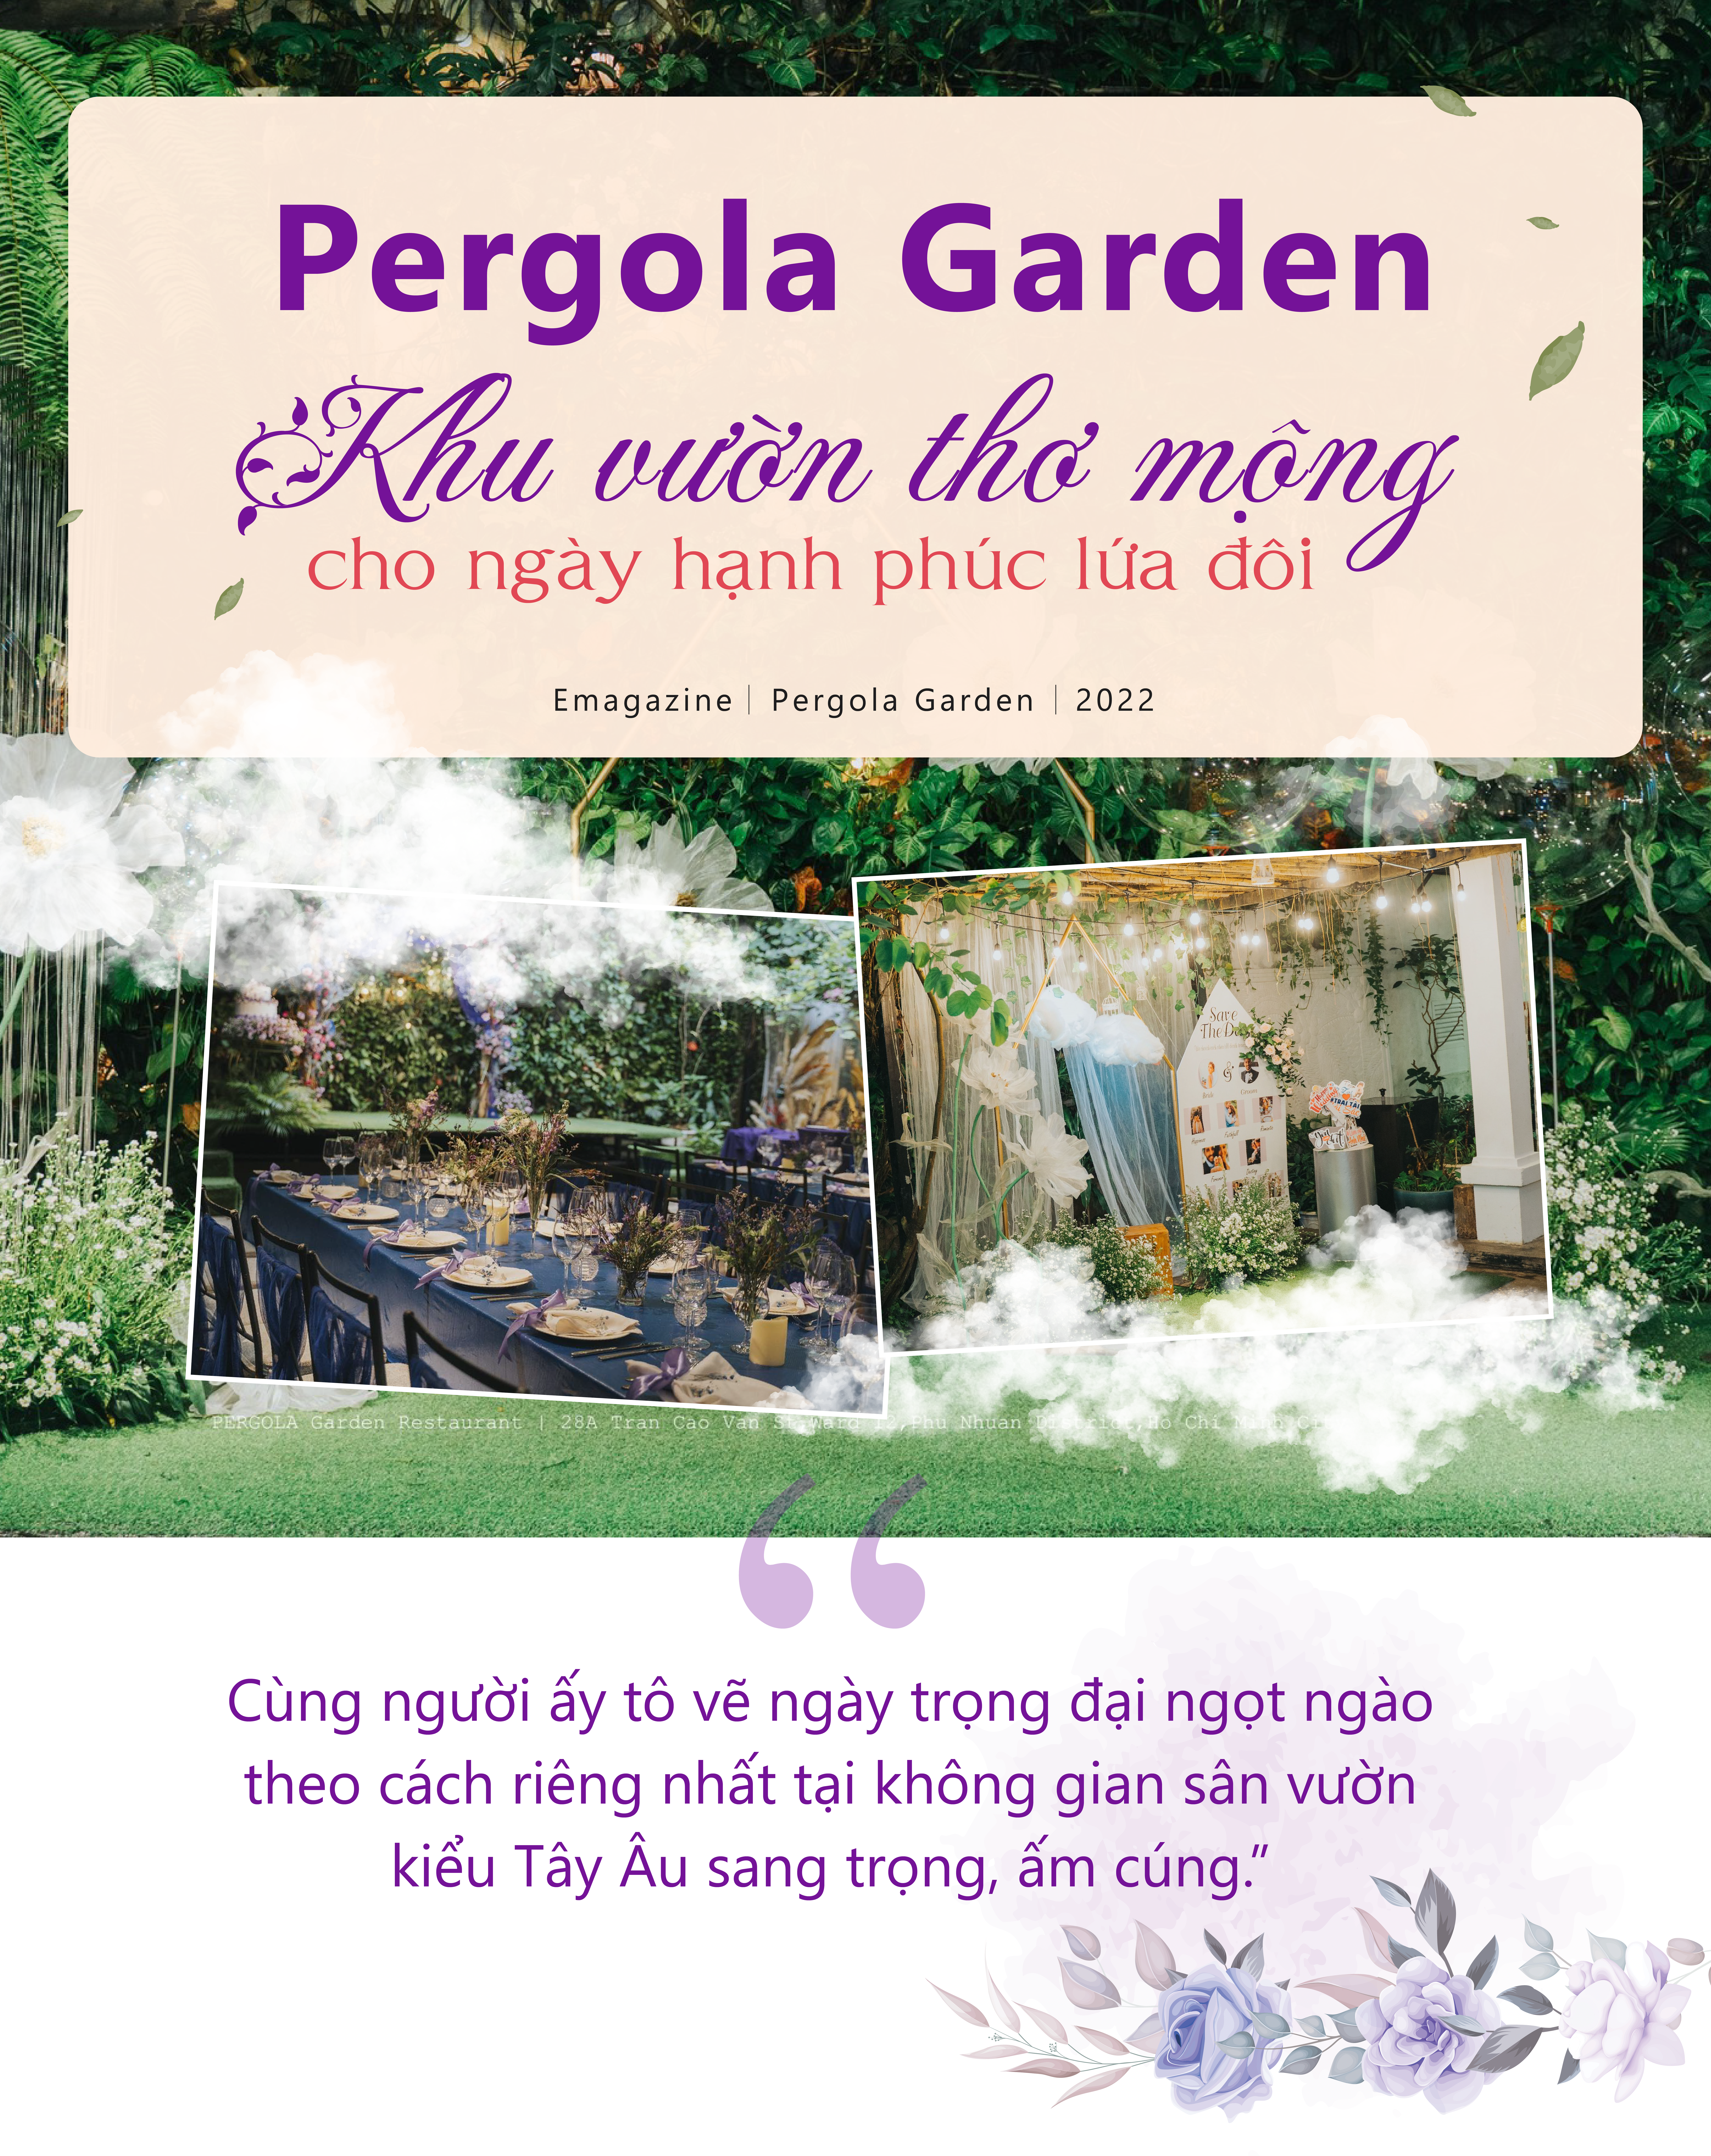 Pergola Garden - Khu vườn thơ mộng cho ngày hạnh phúc lứa đôi